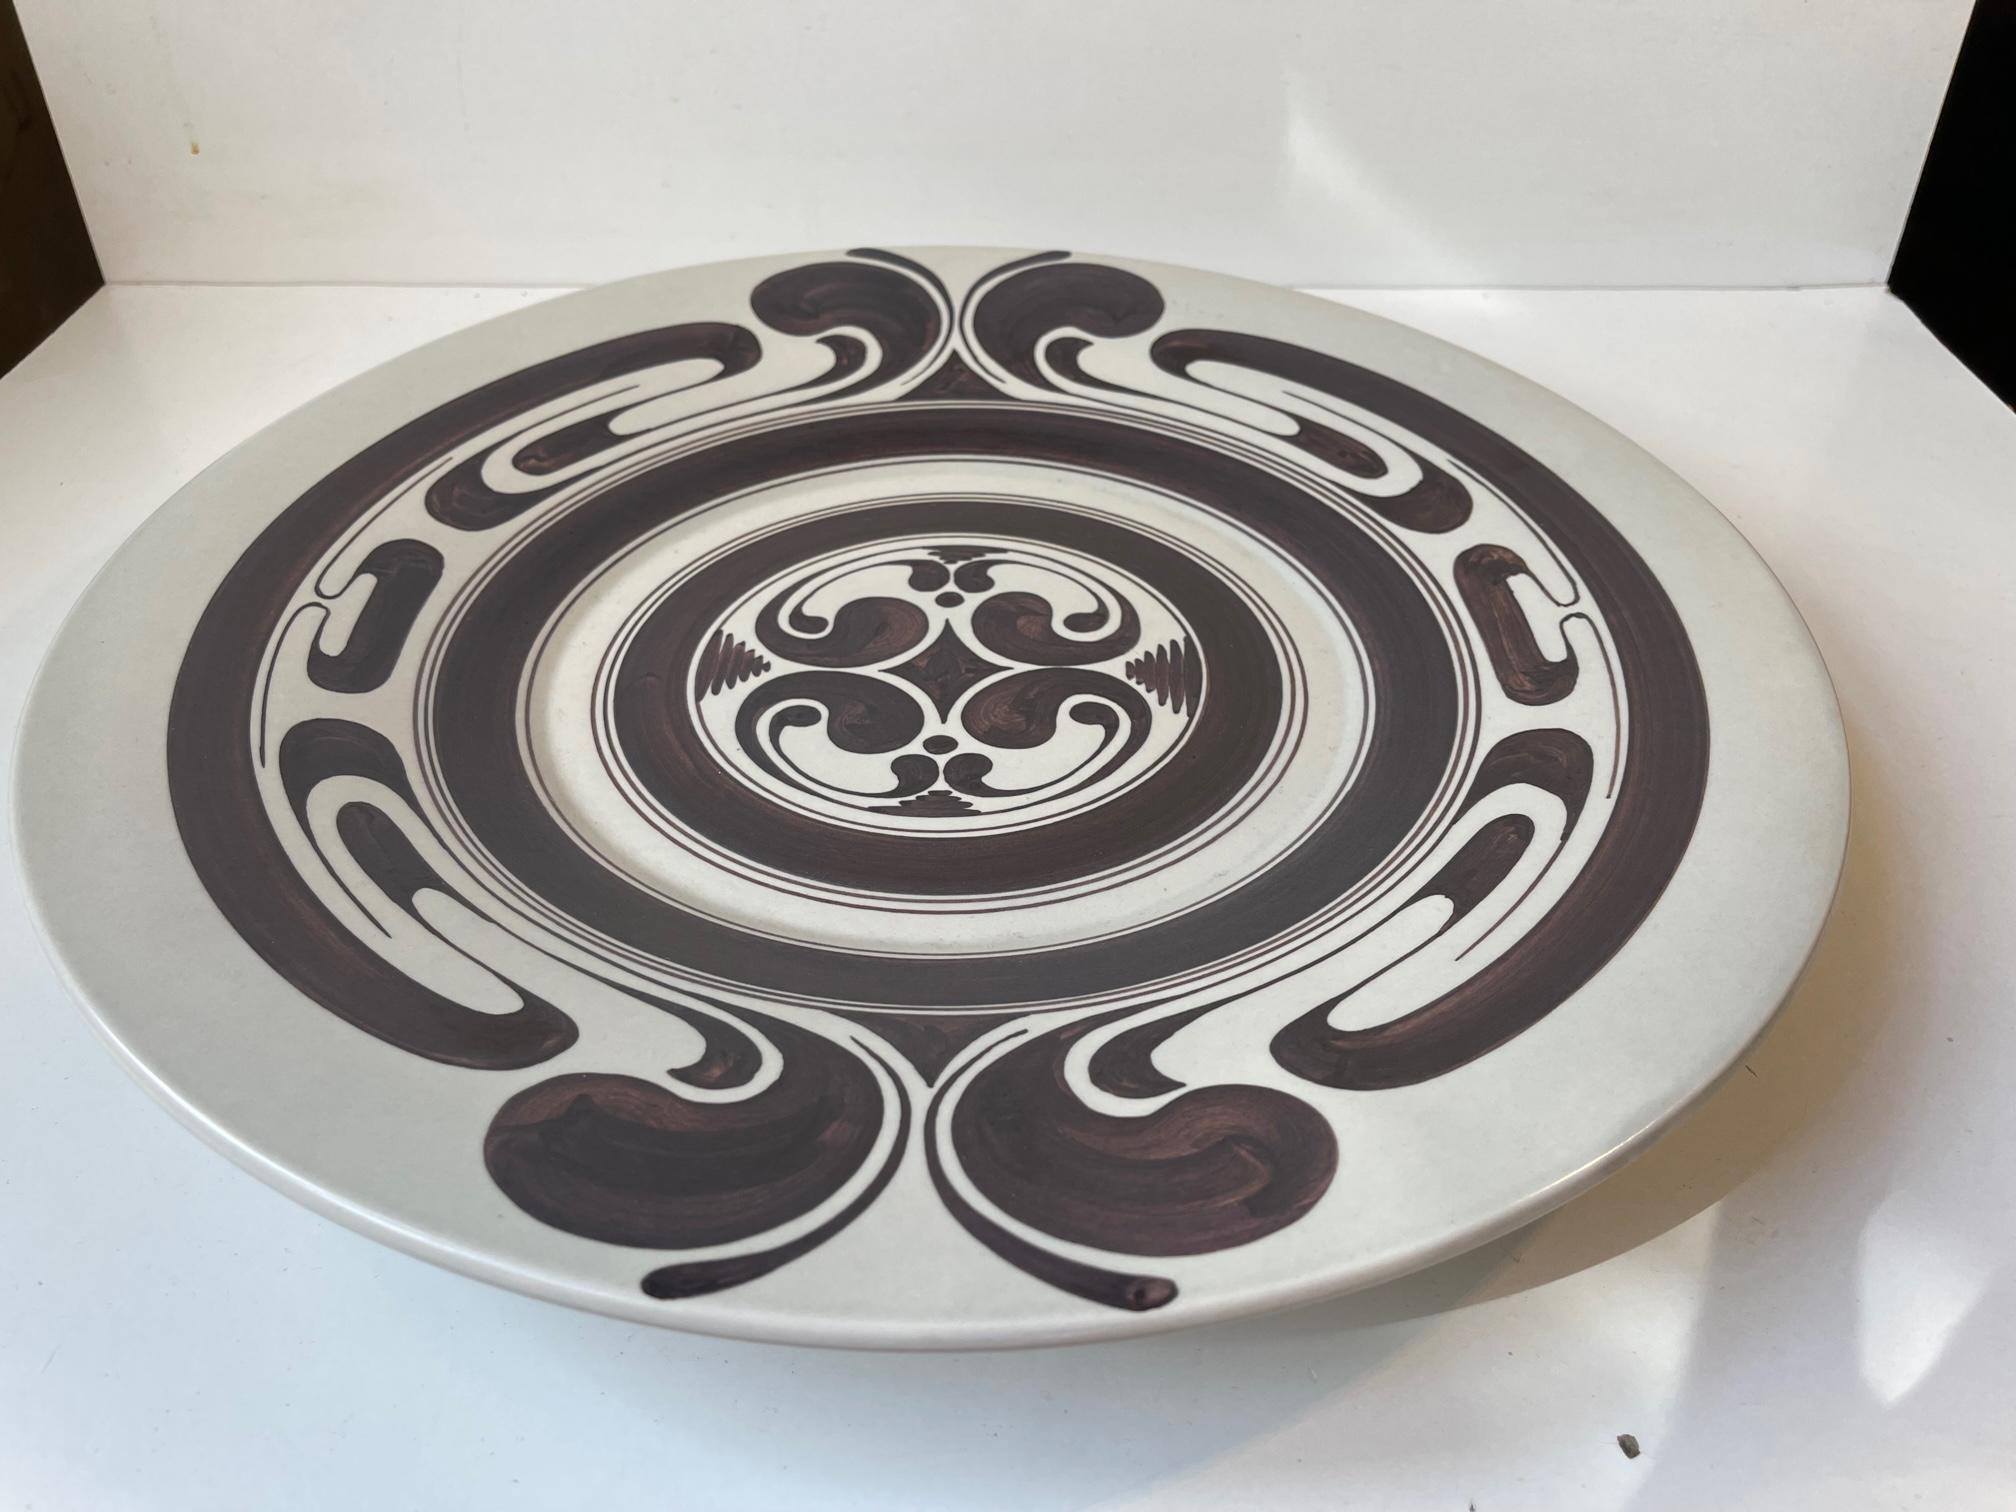 Große dekorative Schale, Tafelaufsatz oder Wandtafel aus handbemalter Keramik. Entworfen und hergestellt bei Rosenthal in Deutschland, ca. 1970-80. Es zeichnet sich durch ein gekonnt und 